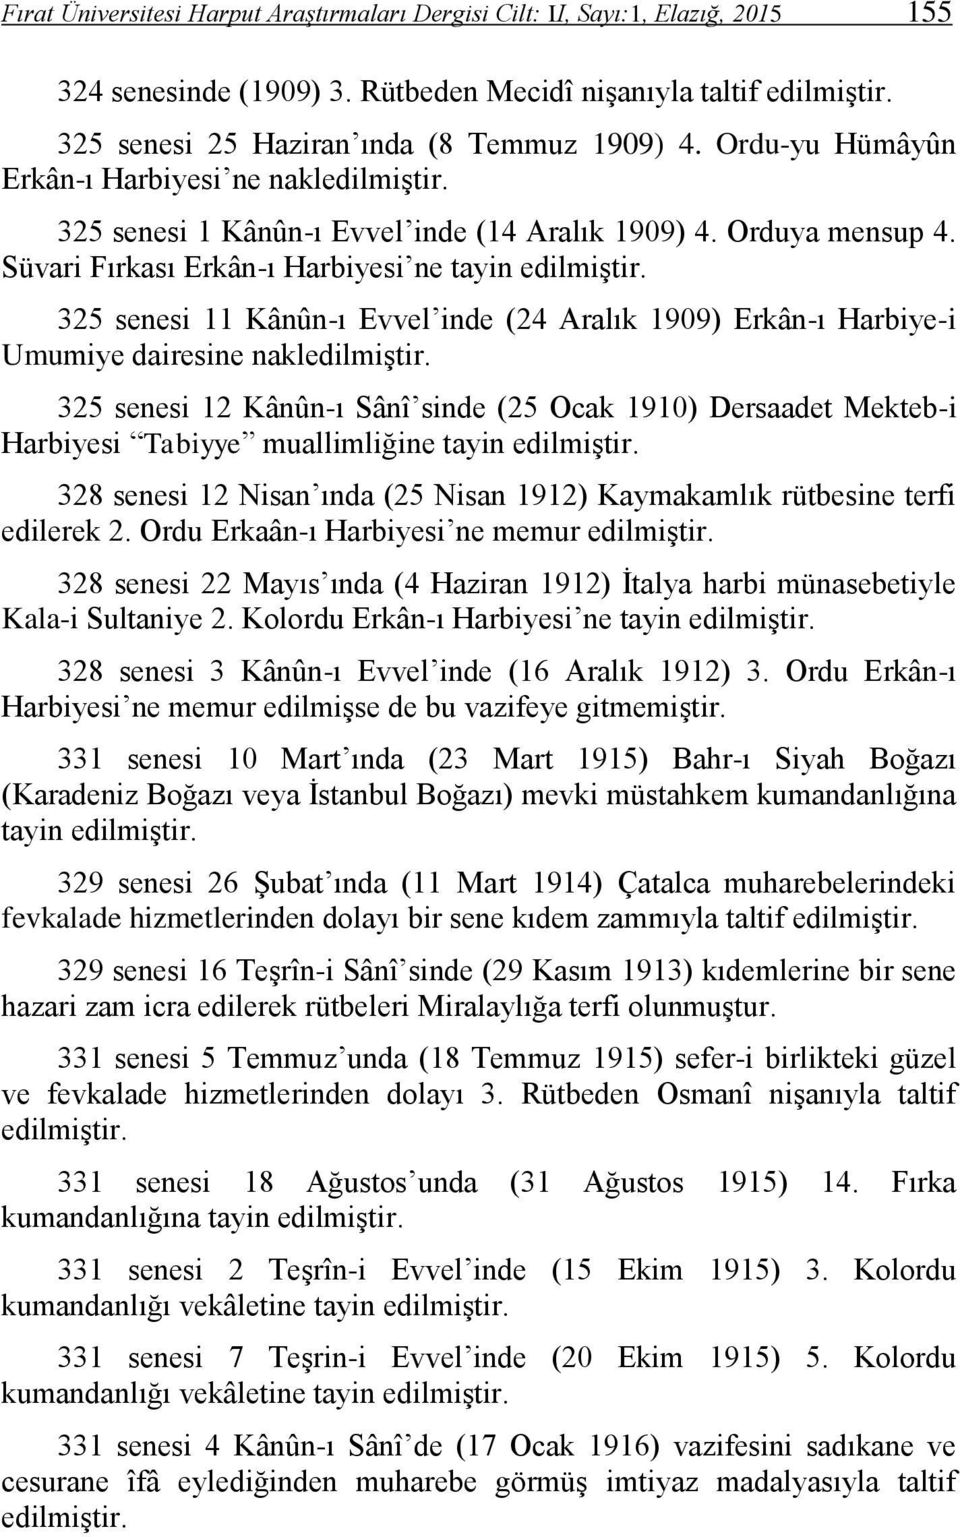 325 senesi 11 Kânûn-ı Evvel inde (24 Aralık 1909) Erkân-ı Harbiye-i Umumiye dairesine nakledilmiştir.